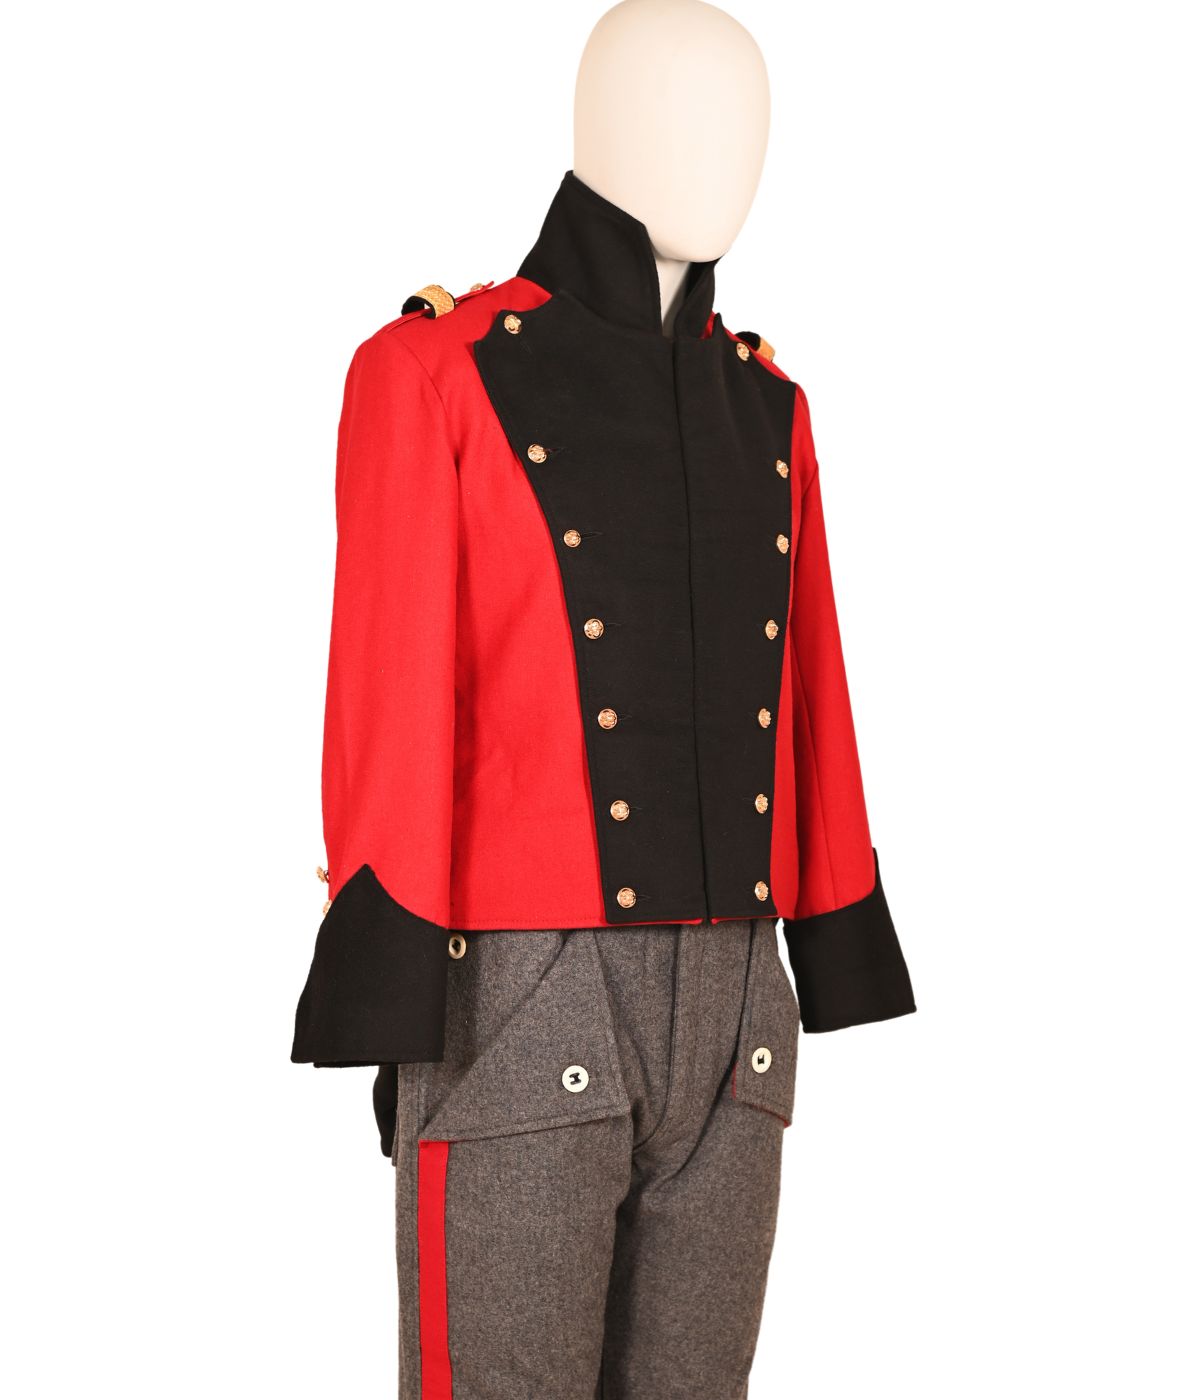 Napoleonic Uniforms Napoleonic Jacket Tunic Steampunk Military Uniform  Leather Hussar Jacket -  Canada